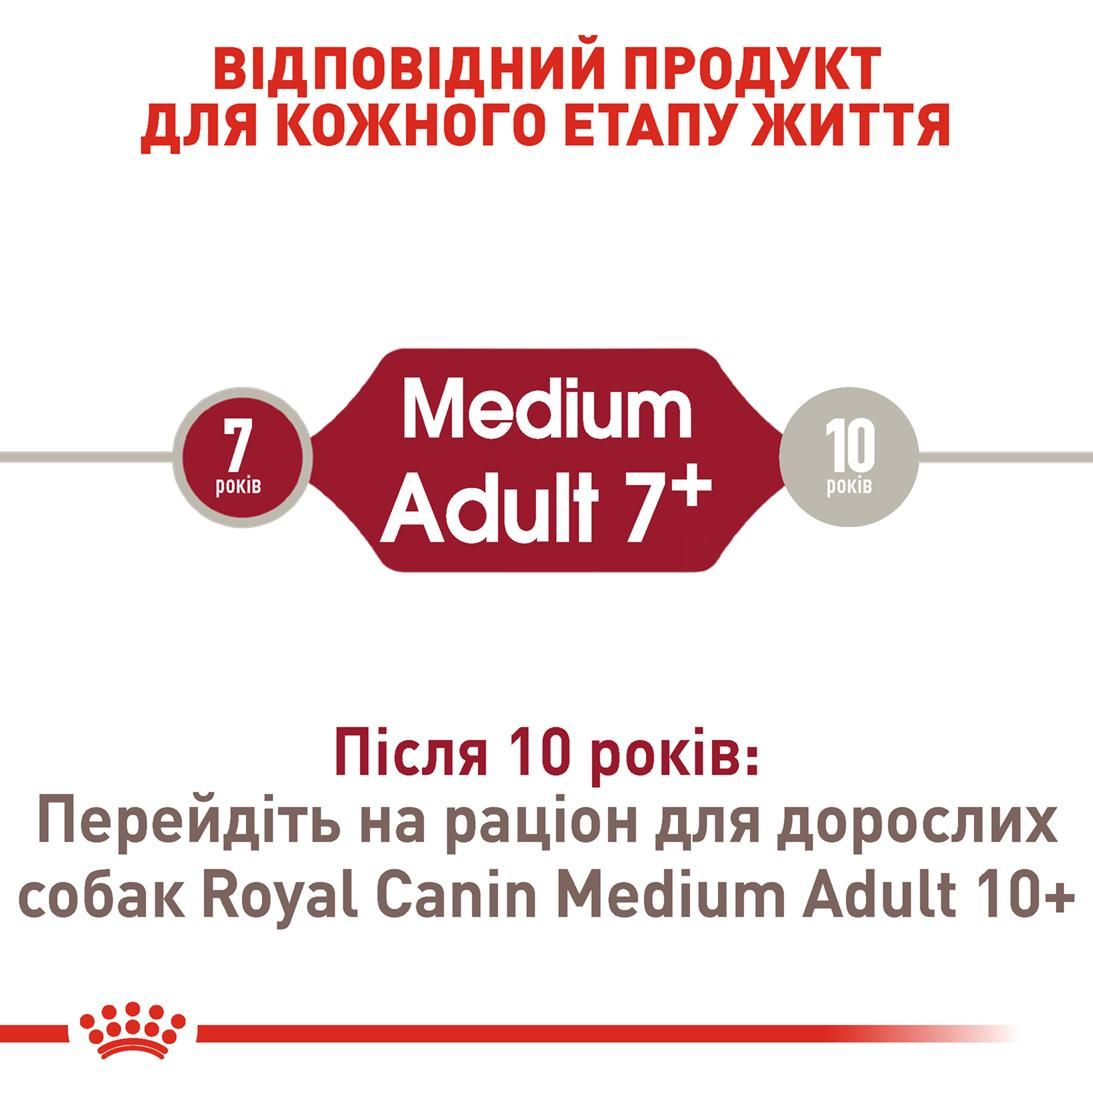 Medium Adult 7+